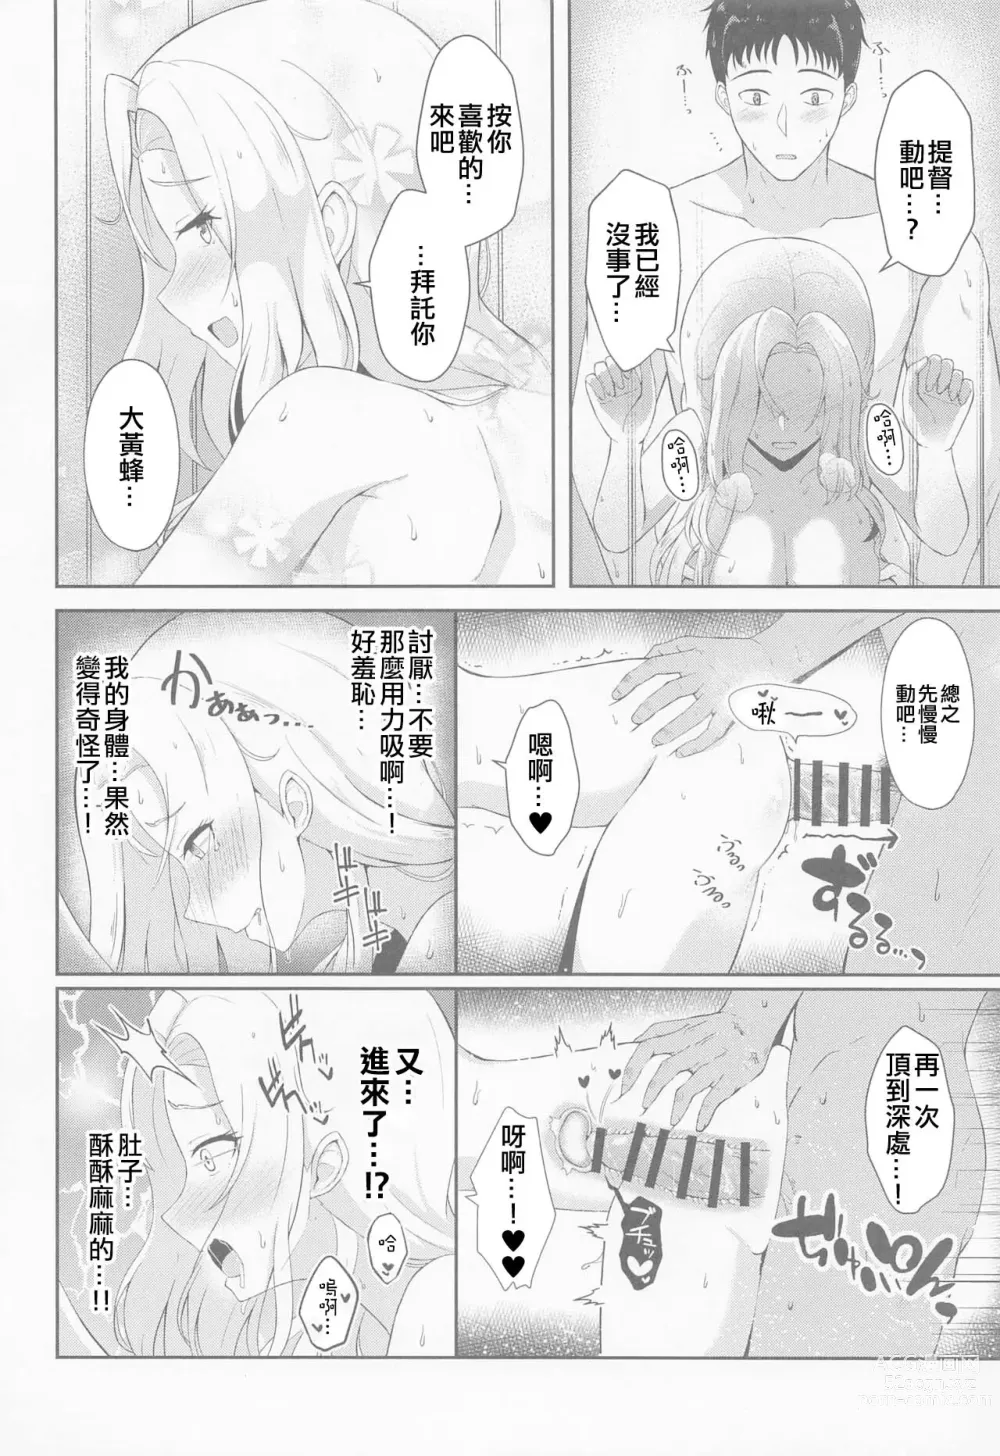 Page 15 of doujinshi Koi suru Hishokan Hornet - The secretary ship in love, Hornet